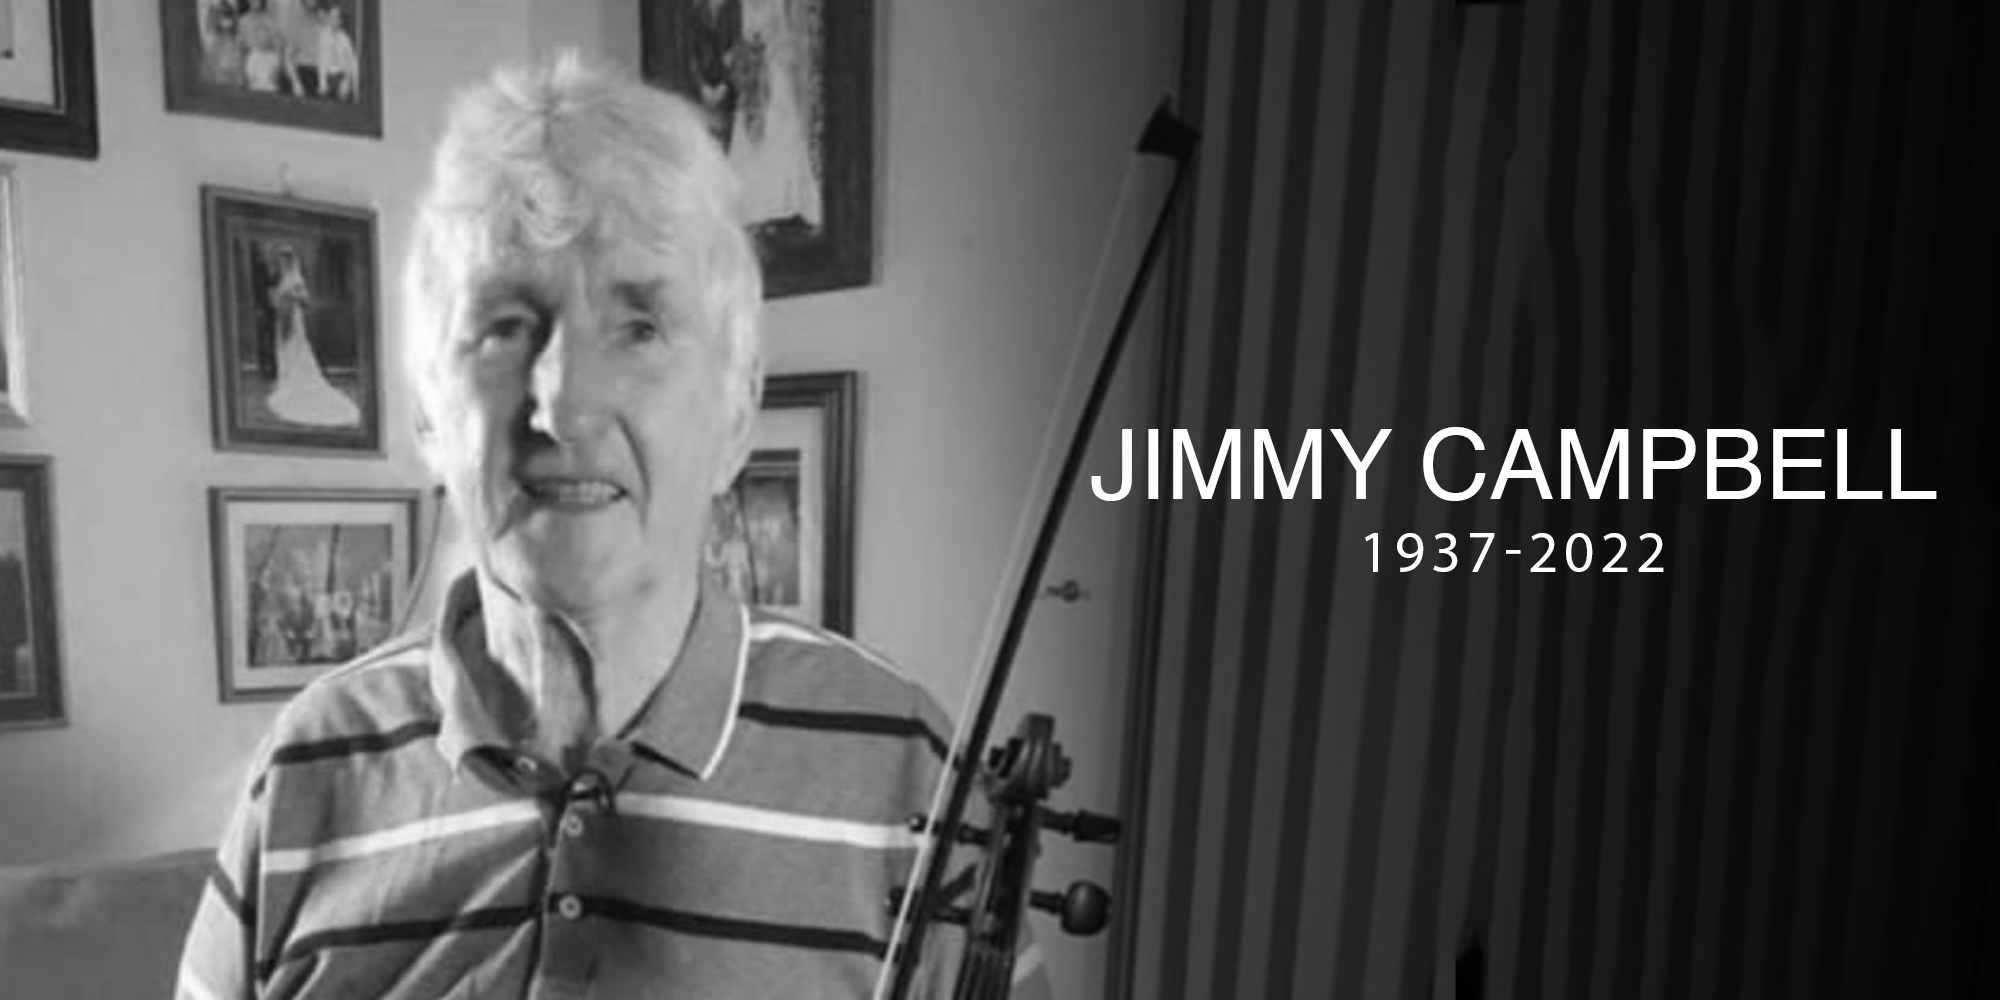 JIMMY CAMPBELL – sárfhidléir Conallach, curtha i gcré na cille 